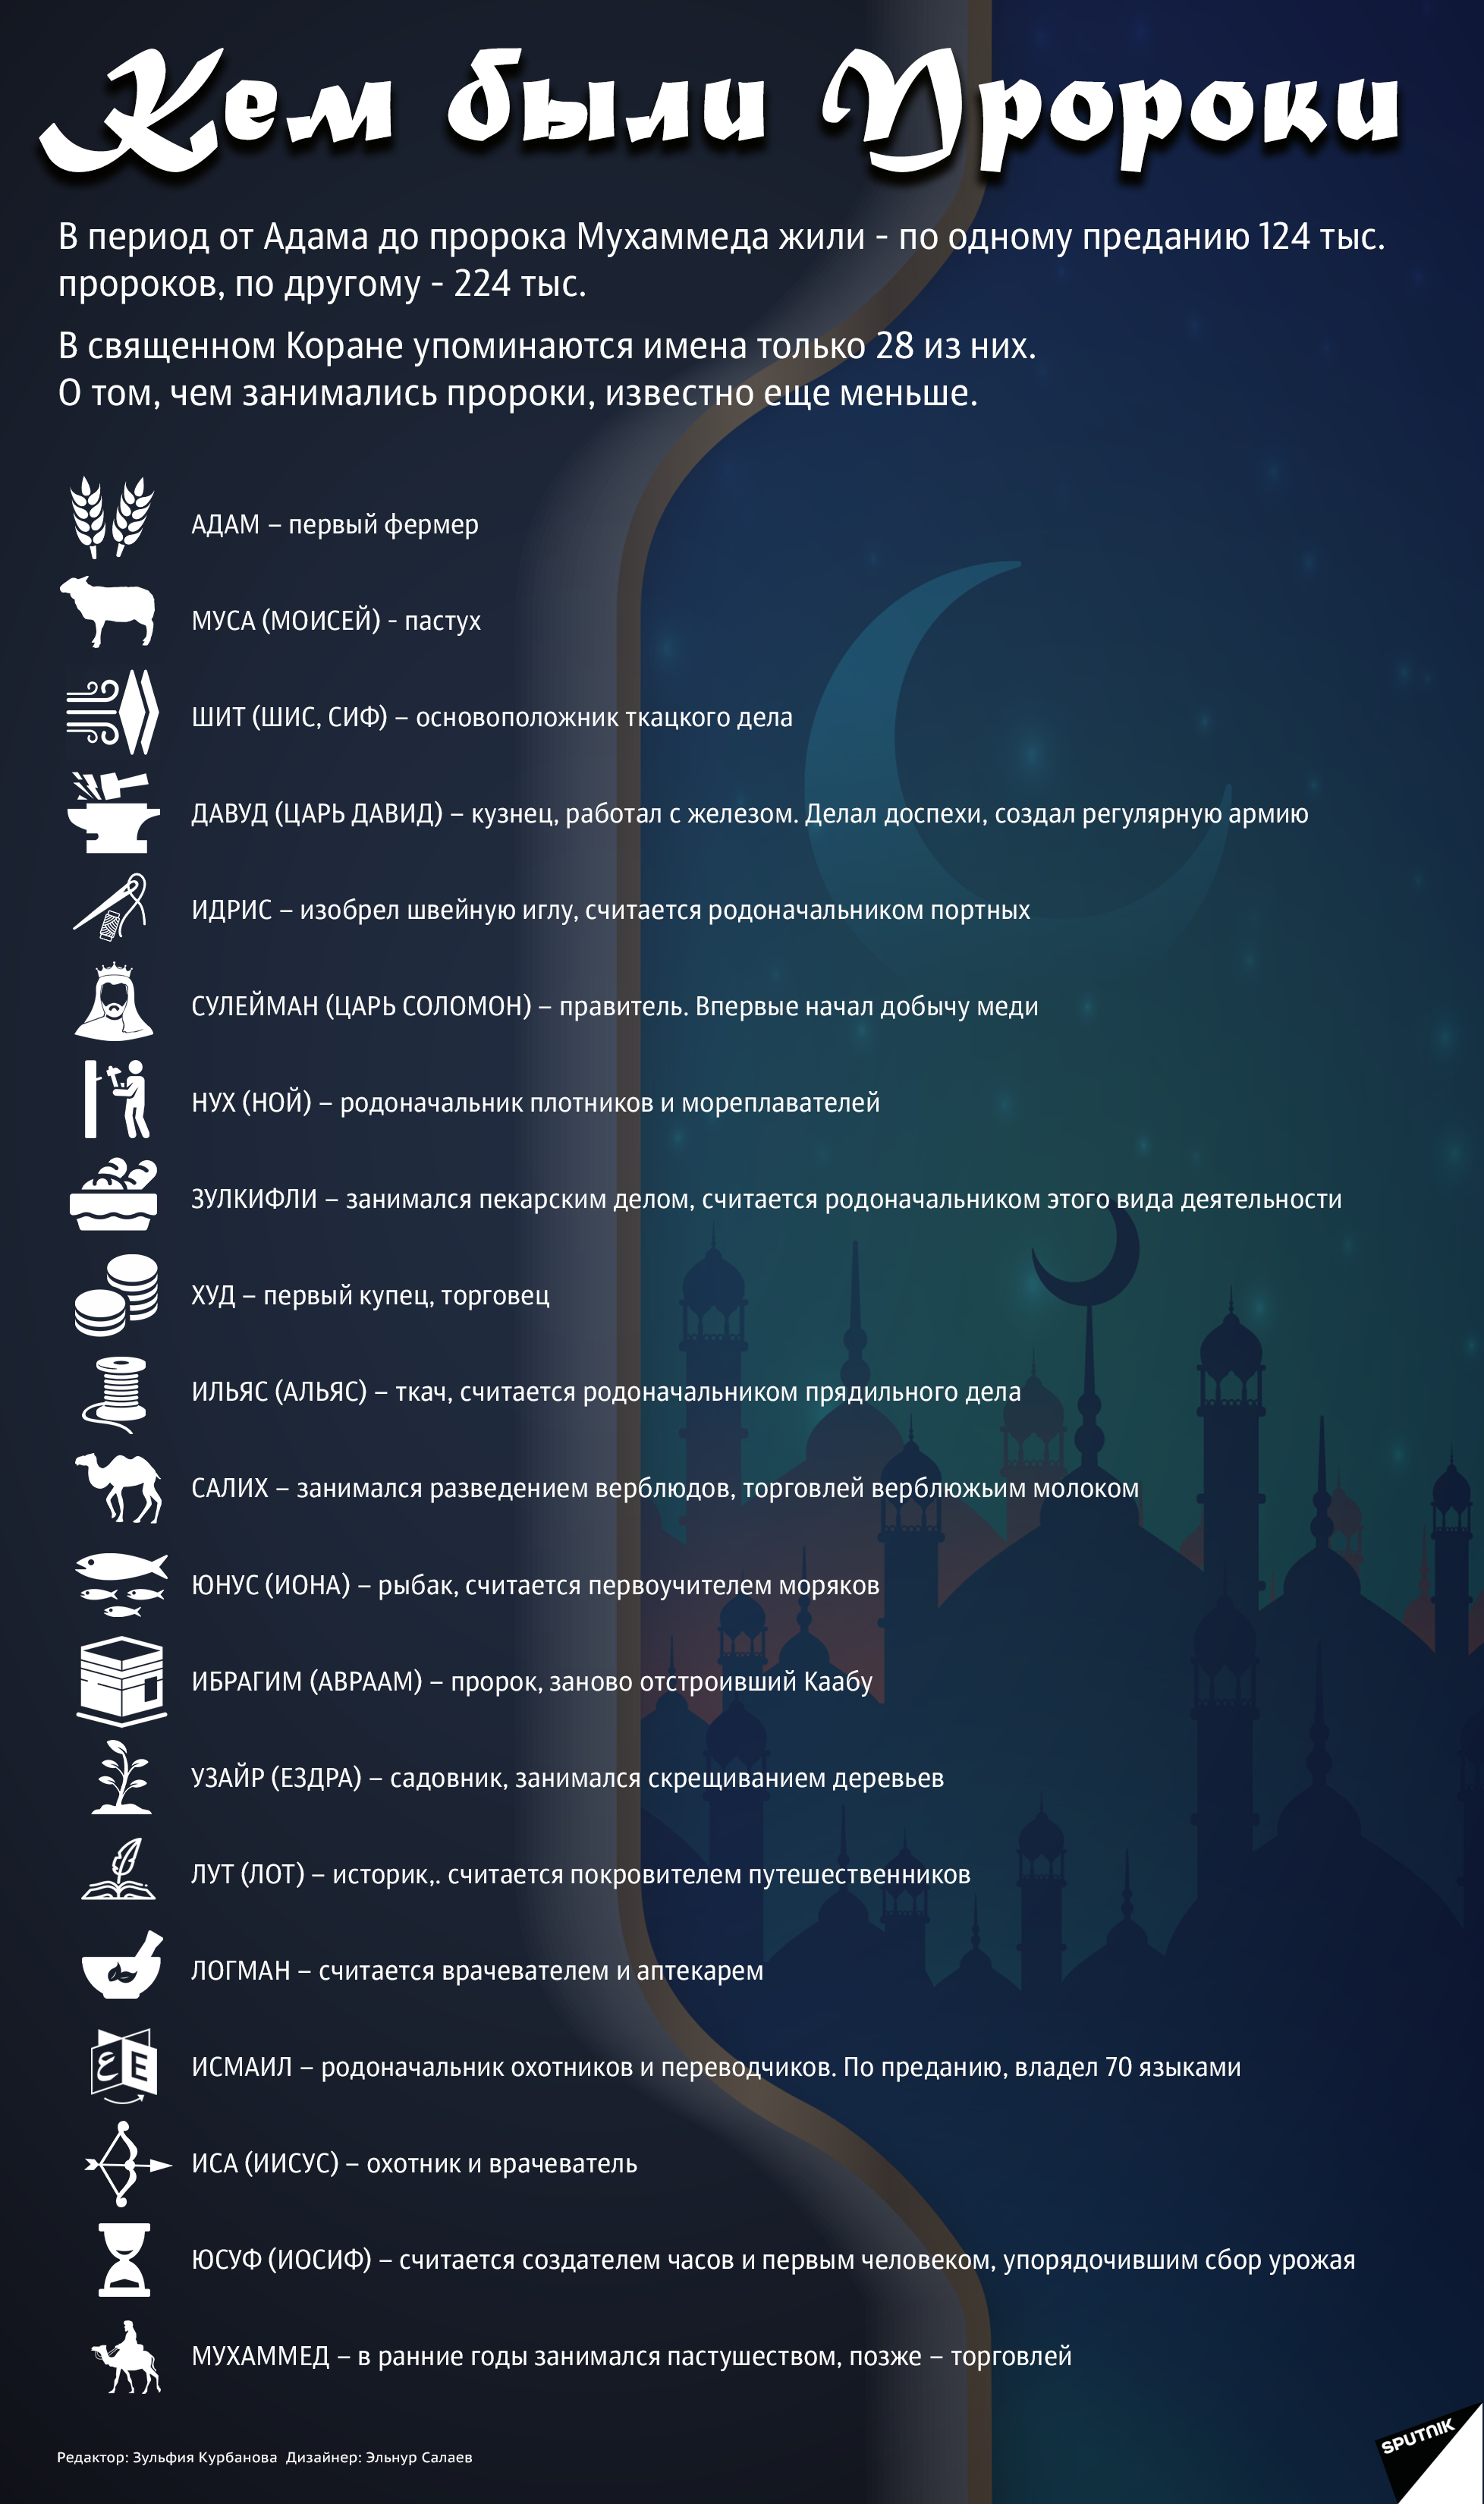 инфографика - Кем были пророки - Sputnik Азербайджан